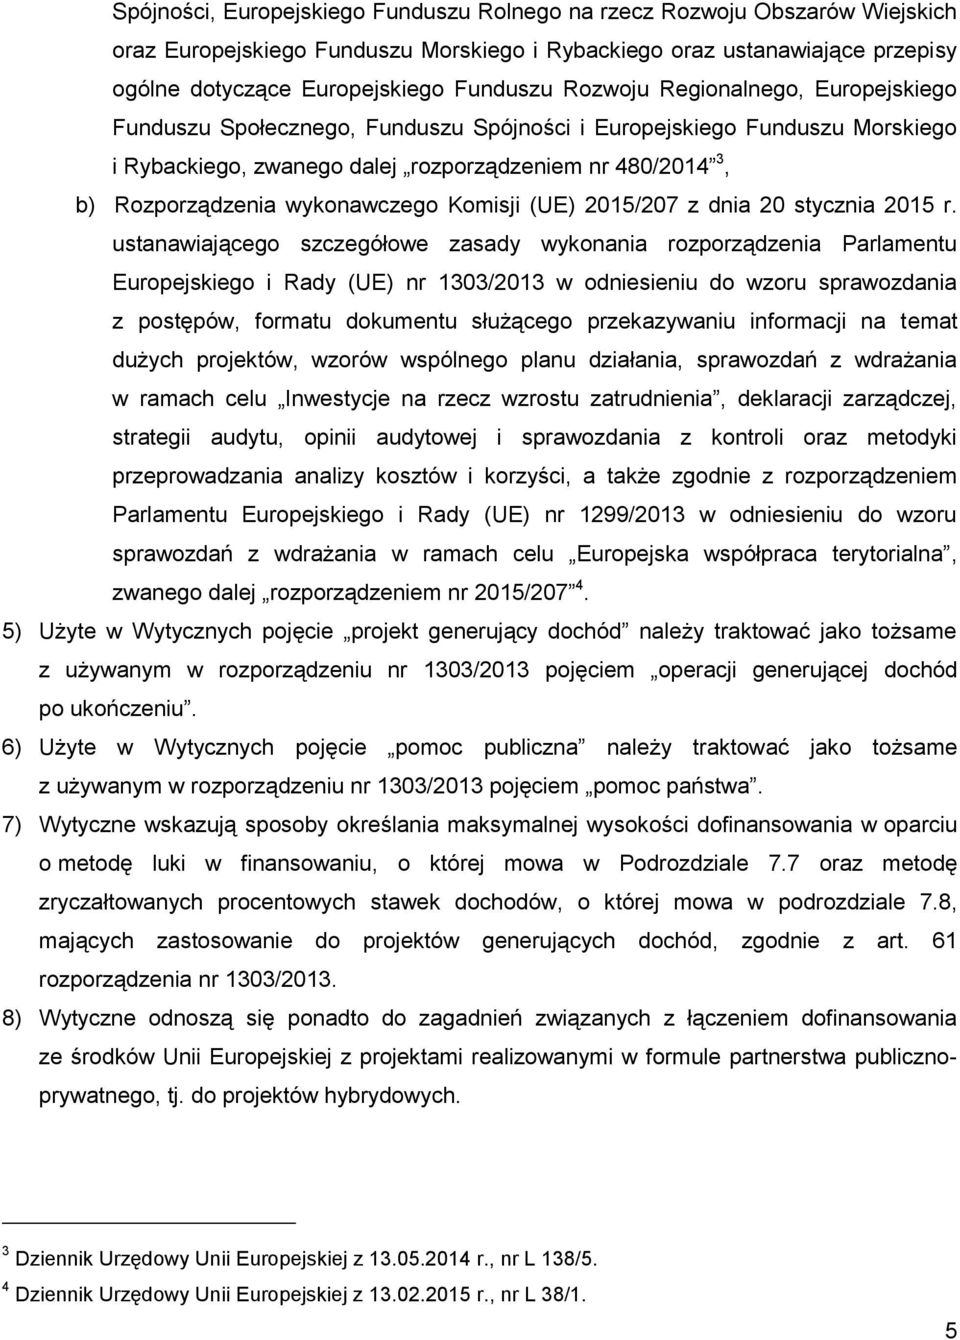 wykonawczego Komisji (UE) 2015/207 z dnia 20 stycznia 2015 r.